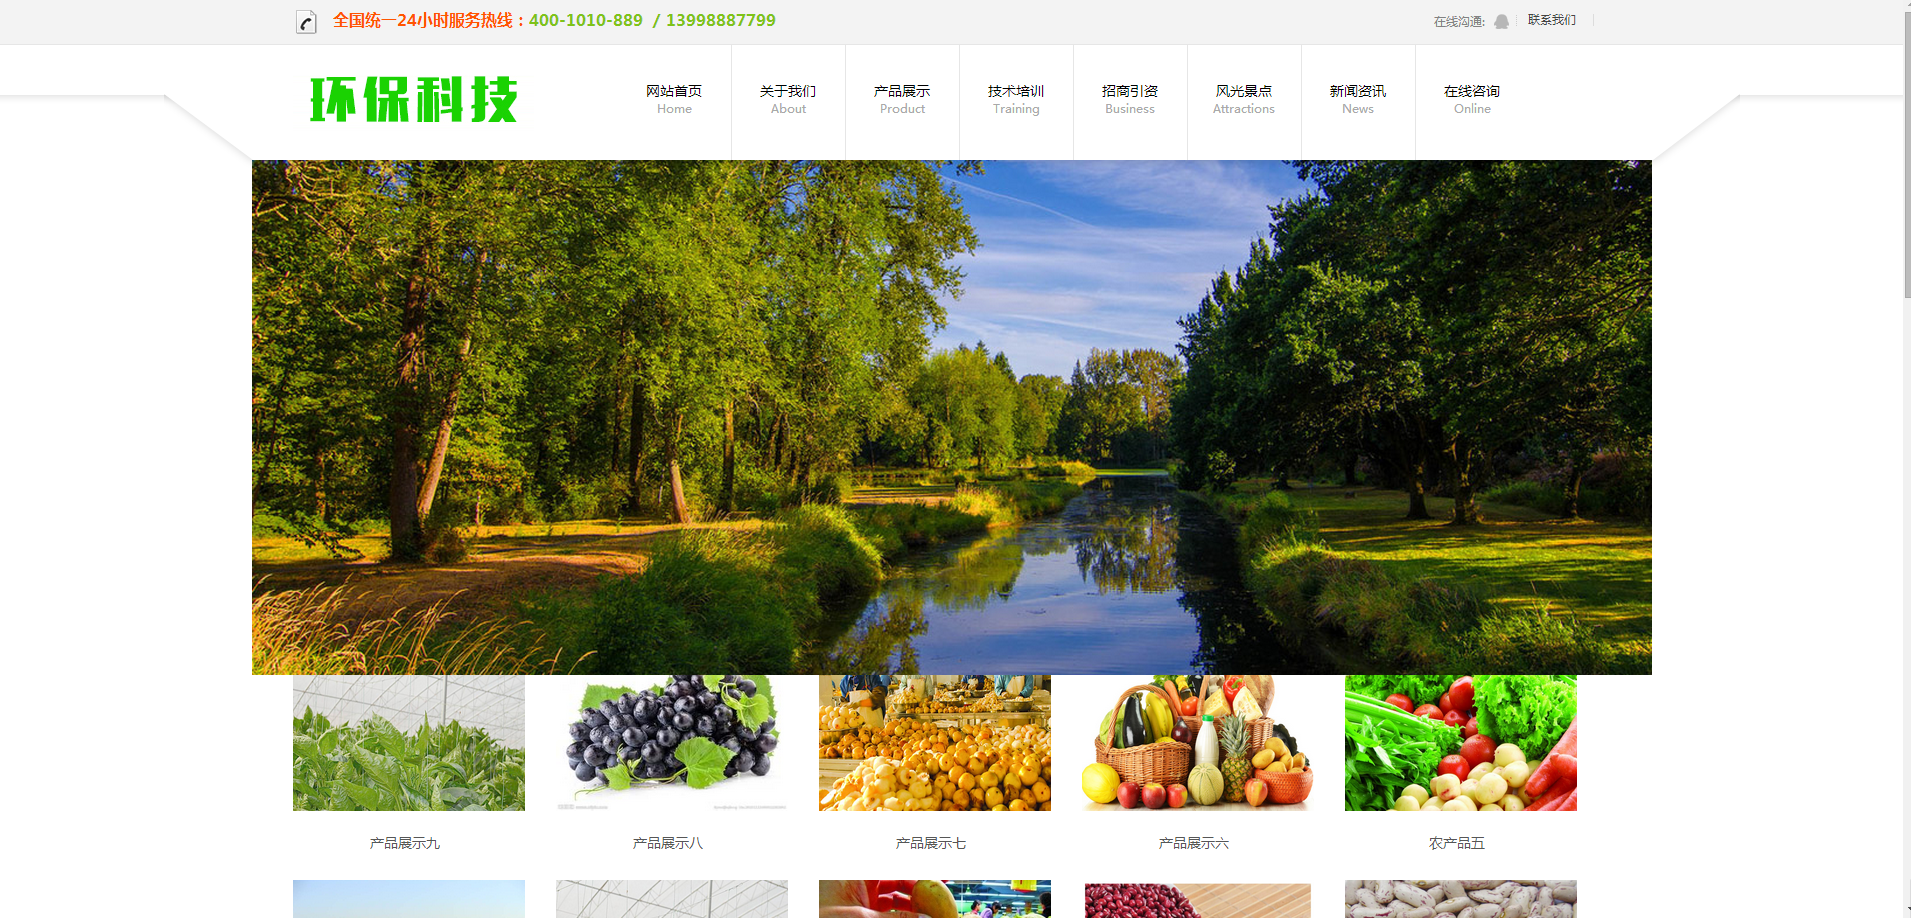 响应式绿色环保科技公司企业官网模板整站下载